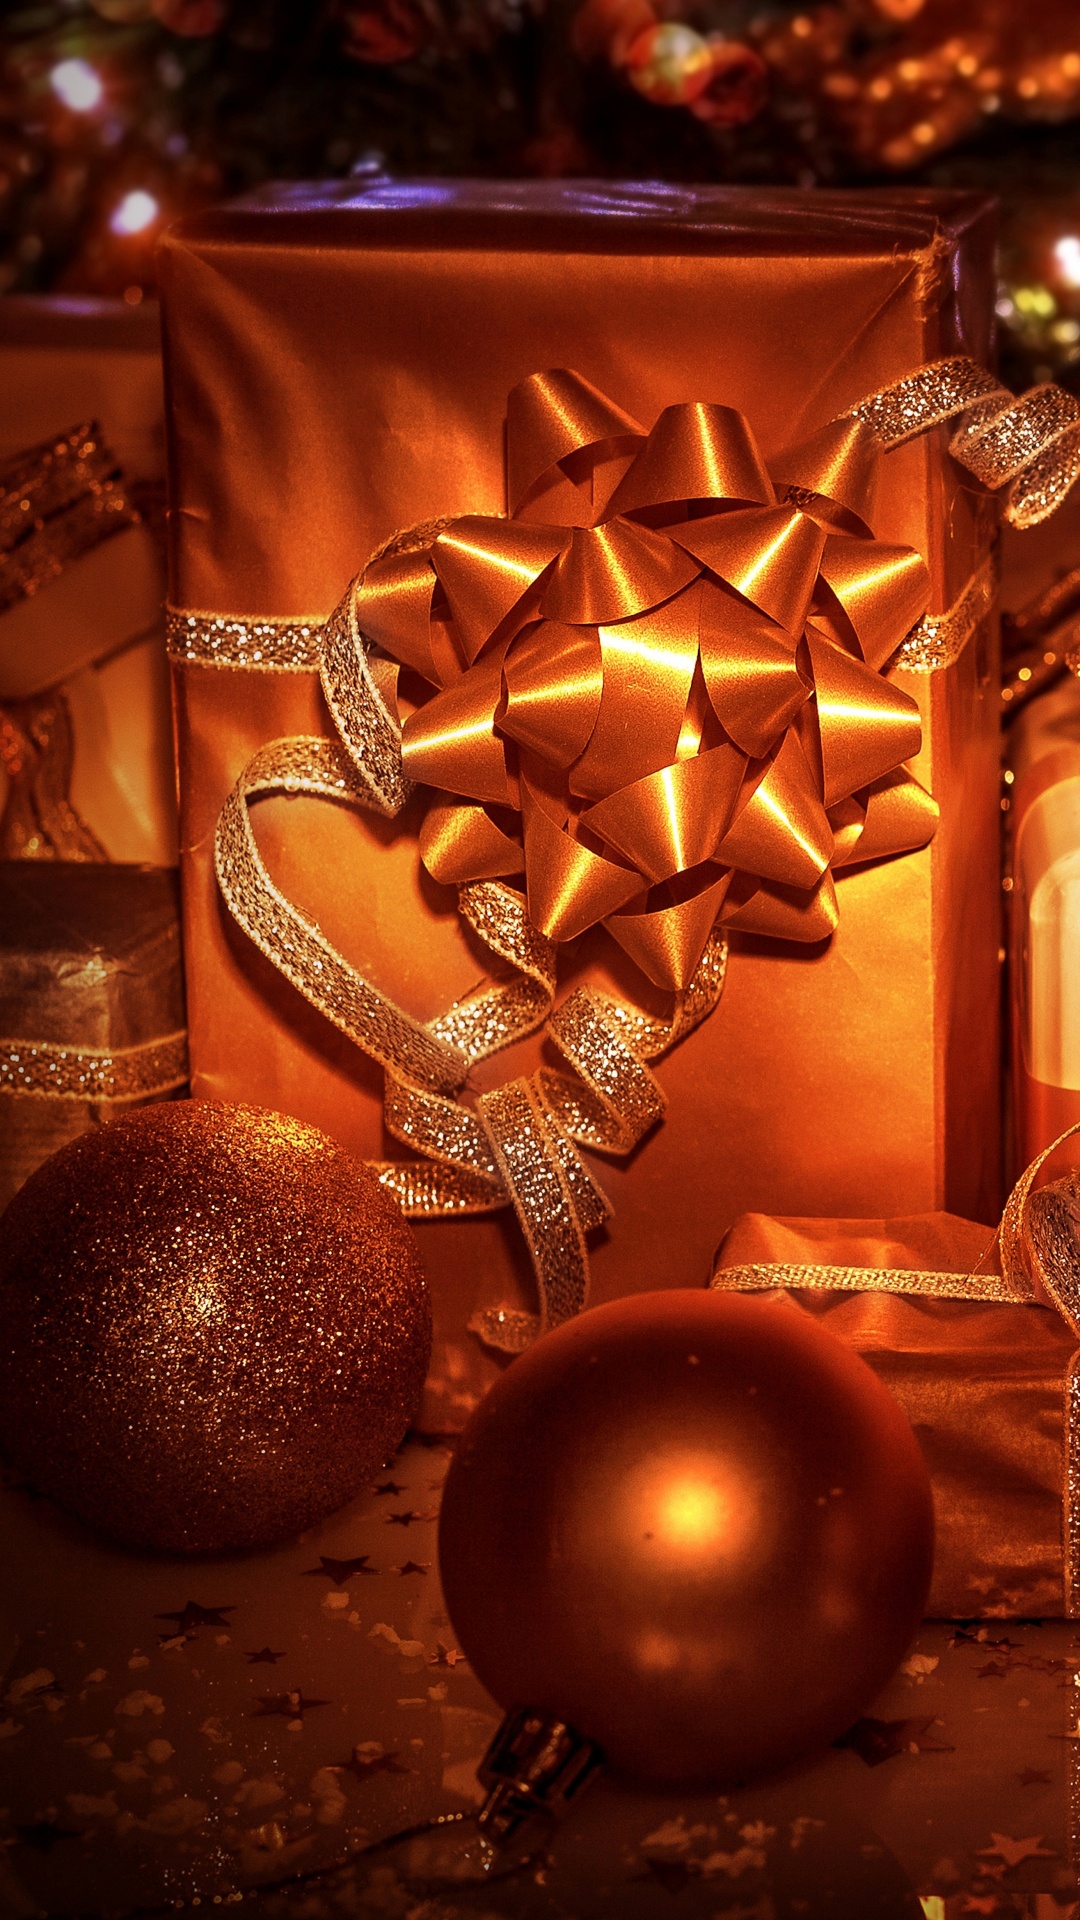 圣诞节那天, 圣诞节的装饰品, 圣诞树, 新的一年, 圣诞装饰 壁纸 1080x1920 允许